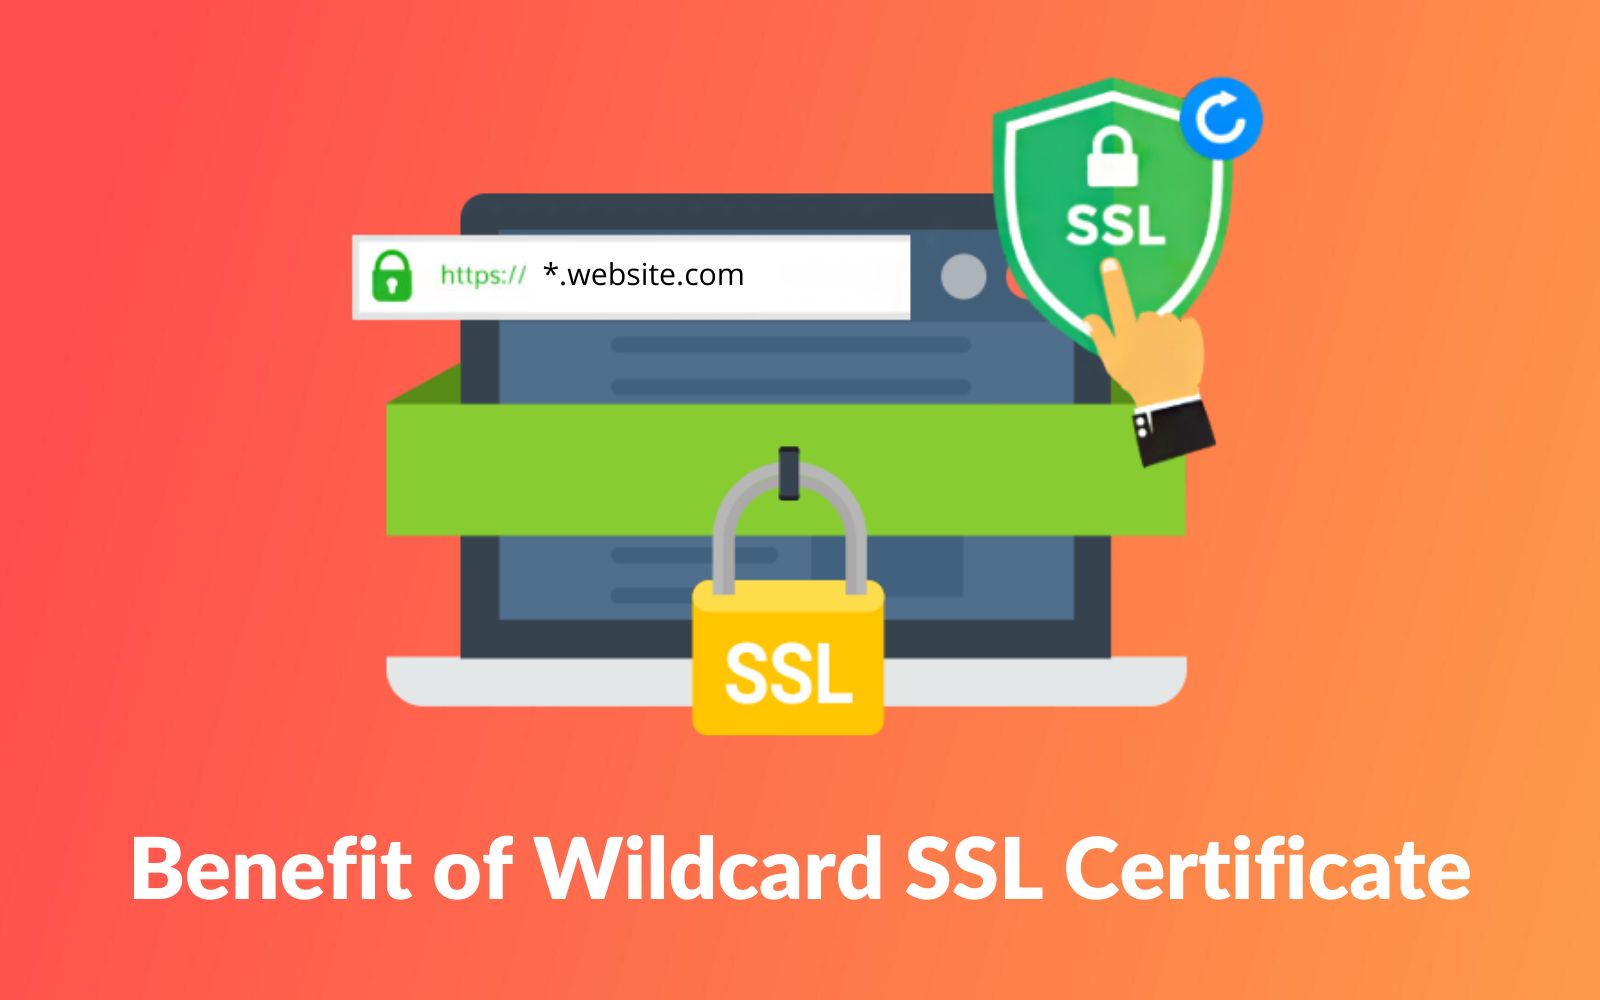 通配符SSL证书